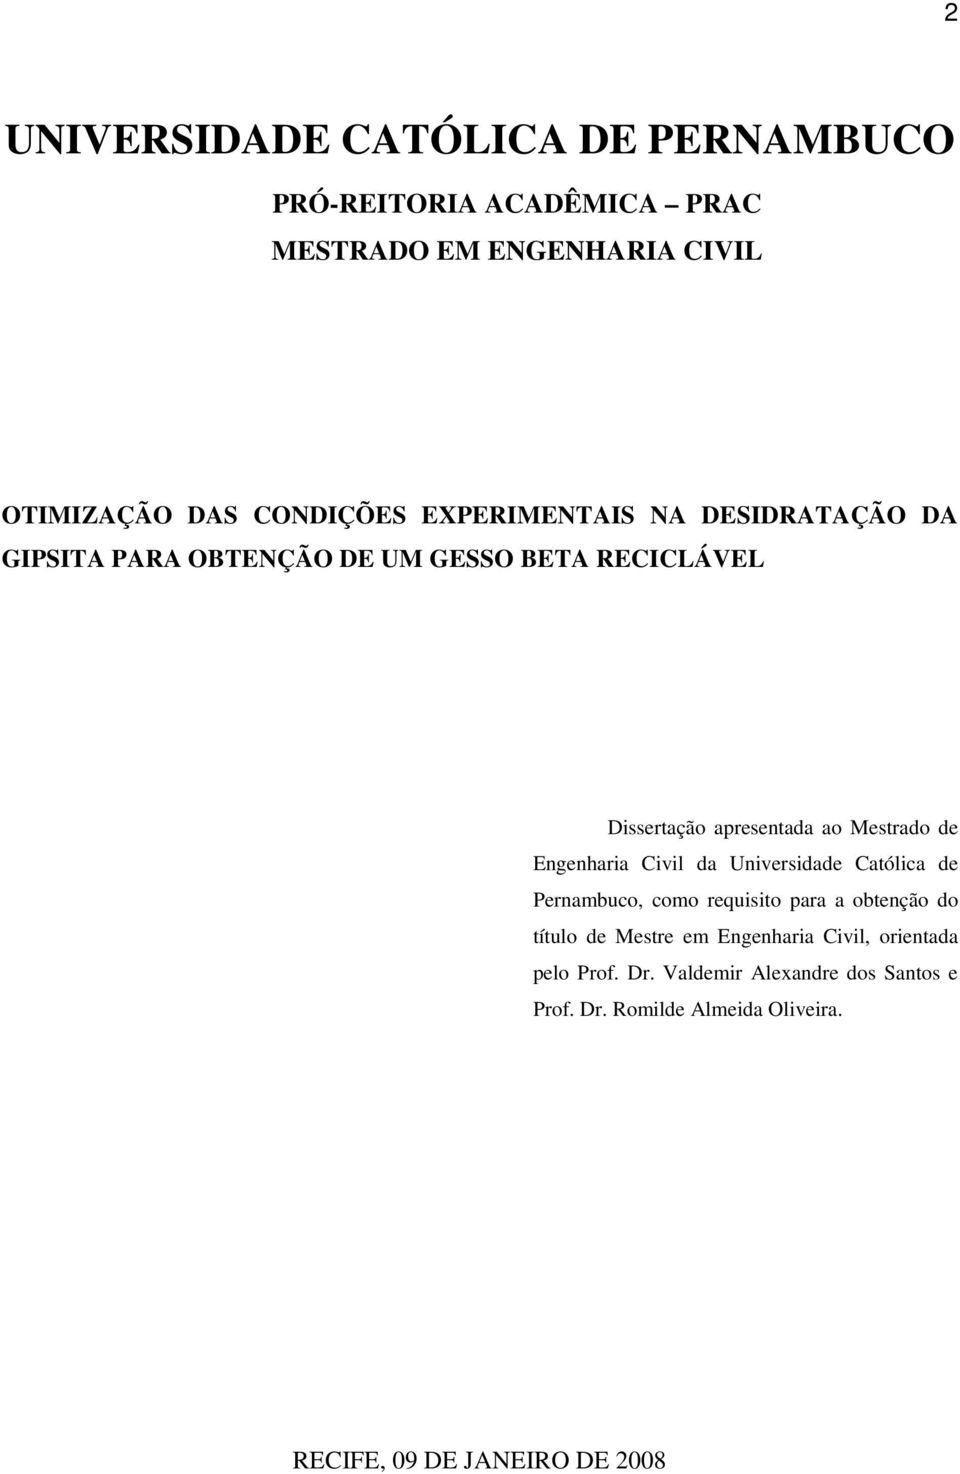 Engenharia Civil da Universidade Católica de Pernambuco, como requisito para a obtenção do título de Mestre em Engenharia